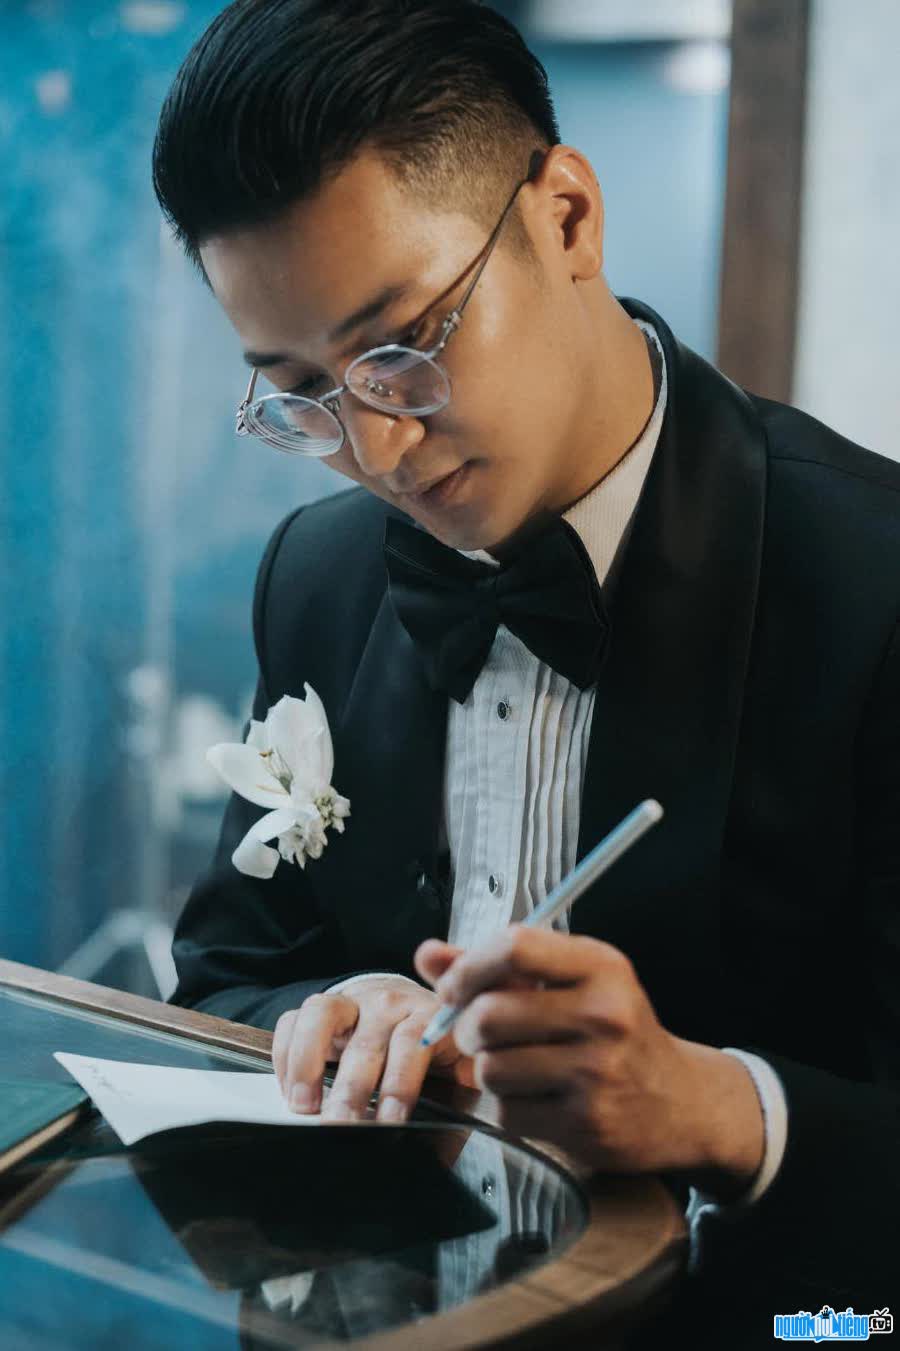 Hình ảnh diễn viên Vương Trọng Trí lịch lãm với veston